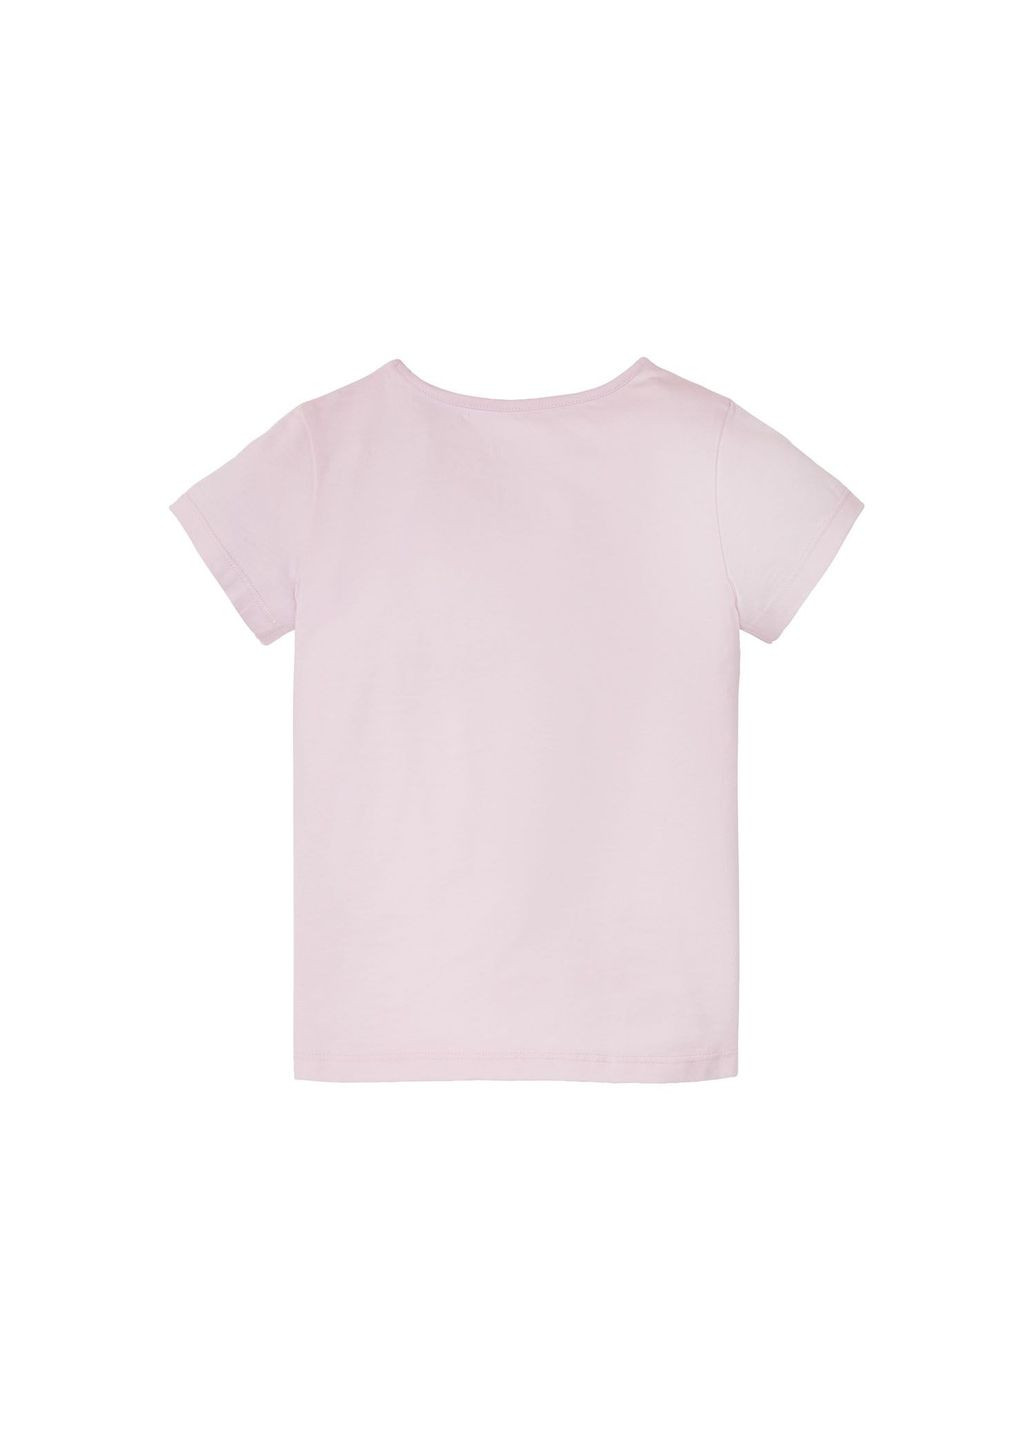 Розовая пижама (футболка и шорты) для девочки frozen 349309-1 Disney